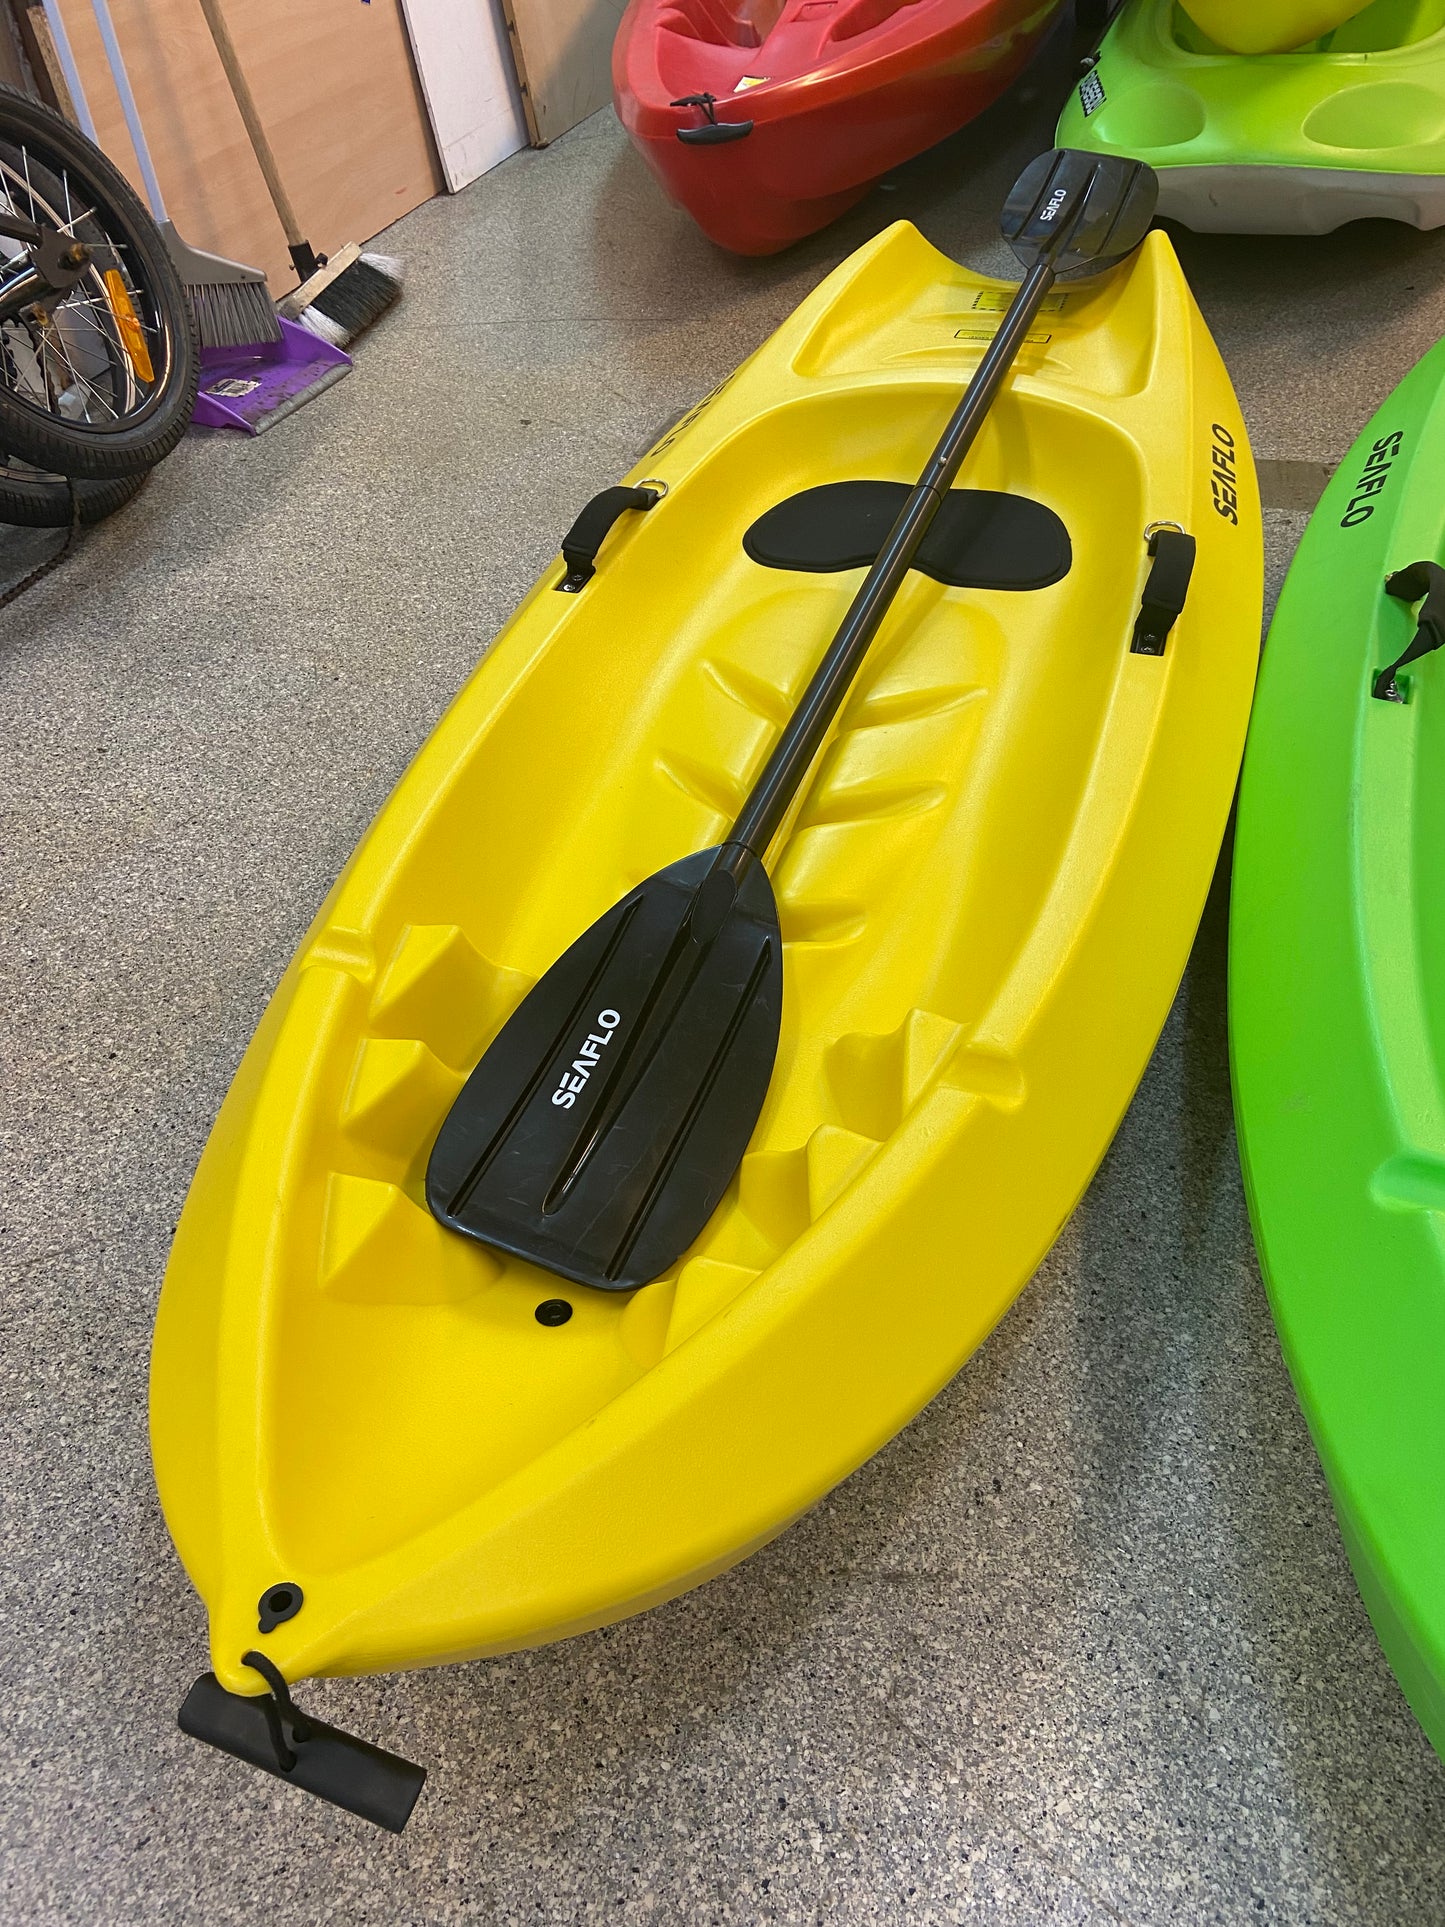 Seaflo 6ft Kids Kayak